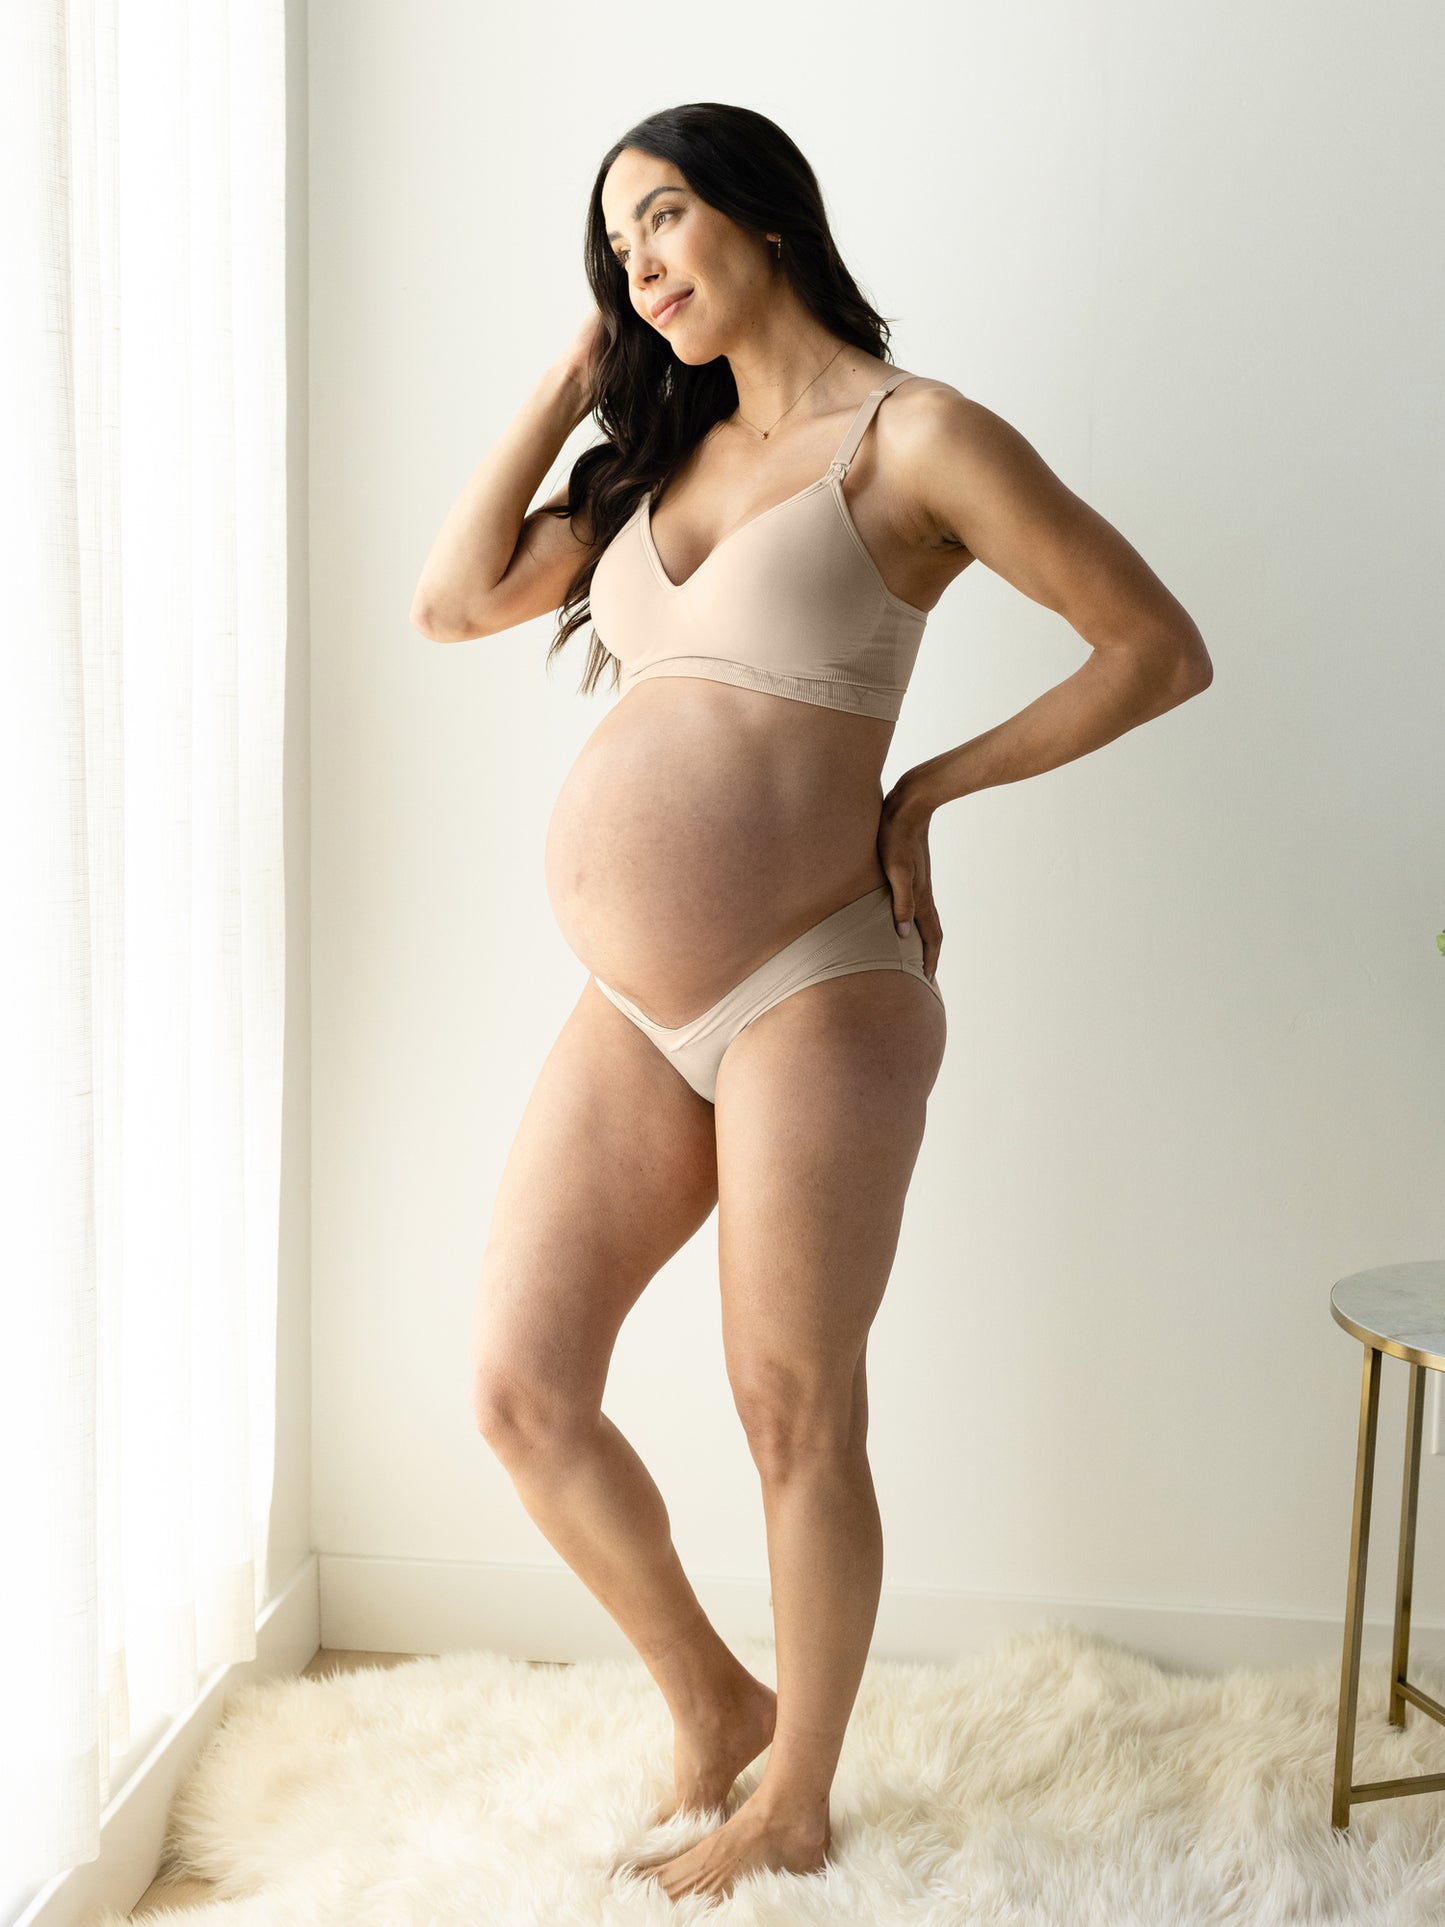 QunButy Lingerie For Women Maternity Pregnant Women Low Waist V